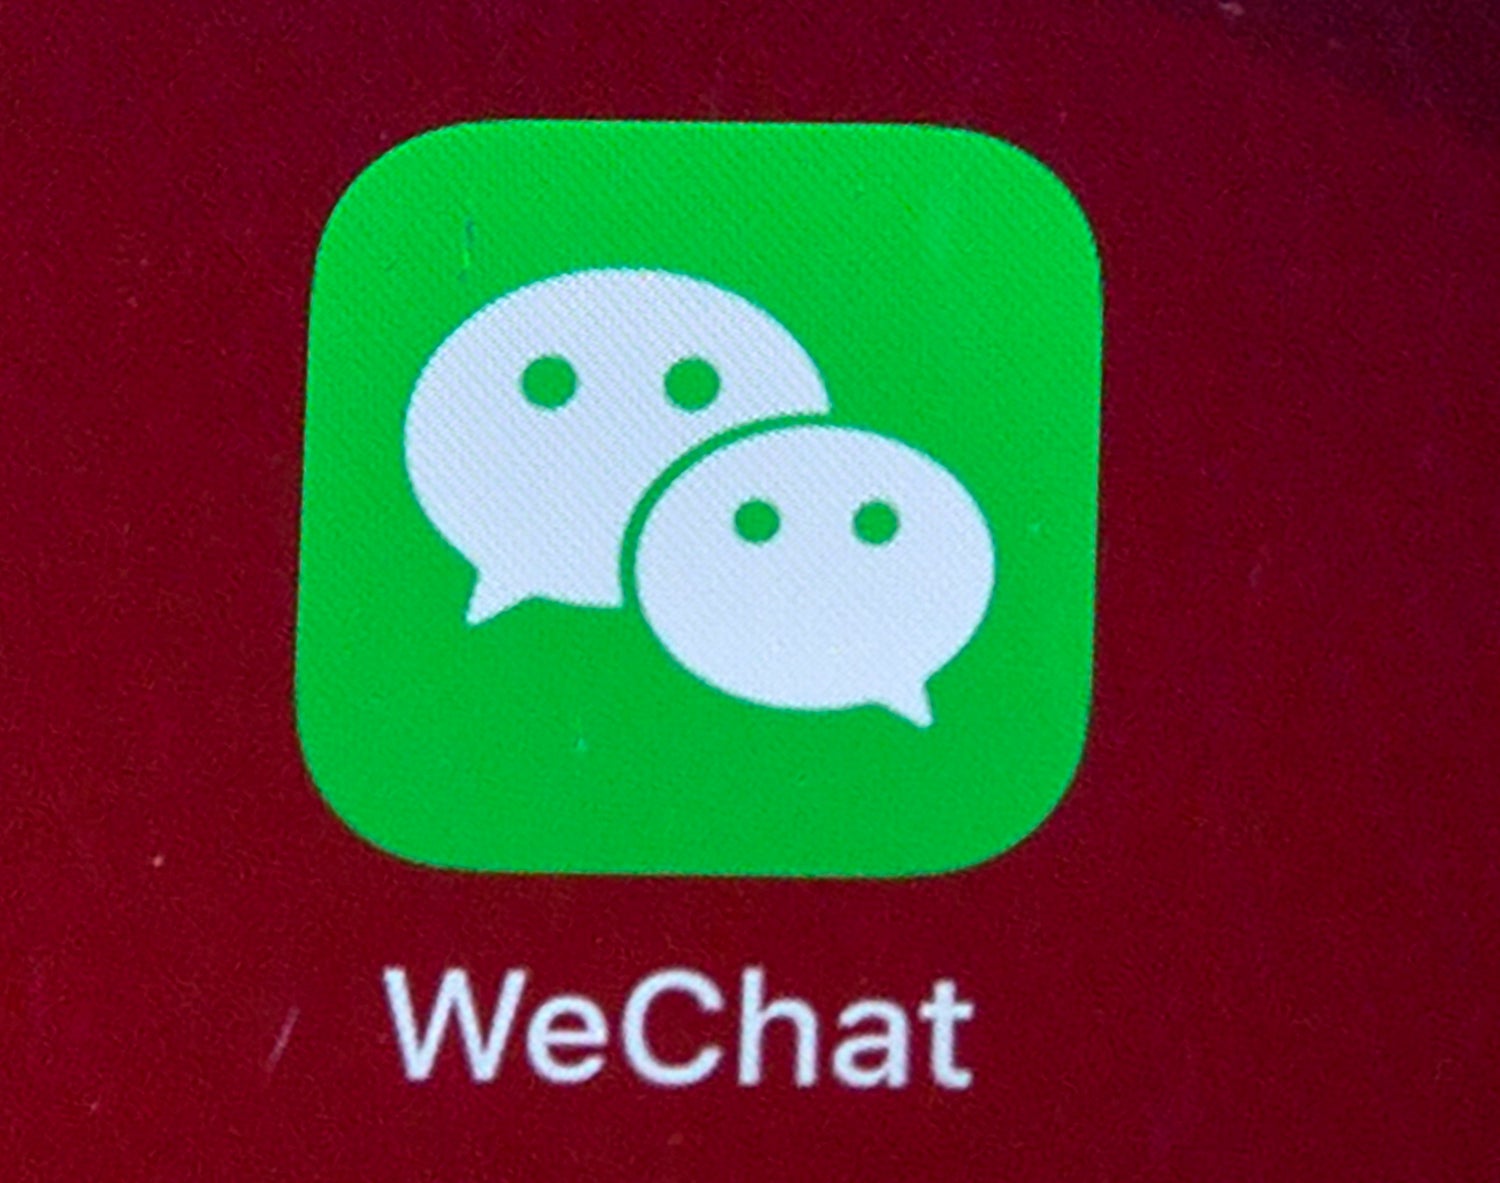 Resolución de prohibición de WeChat